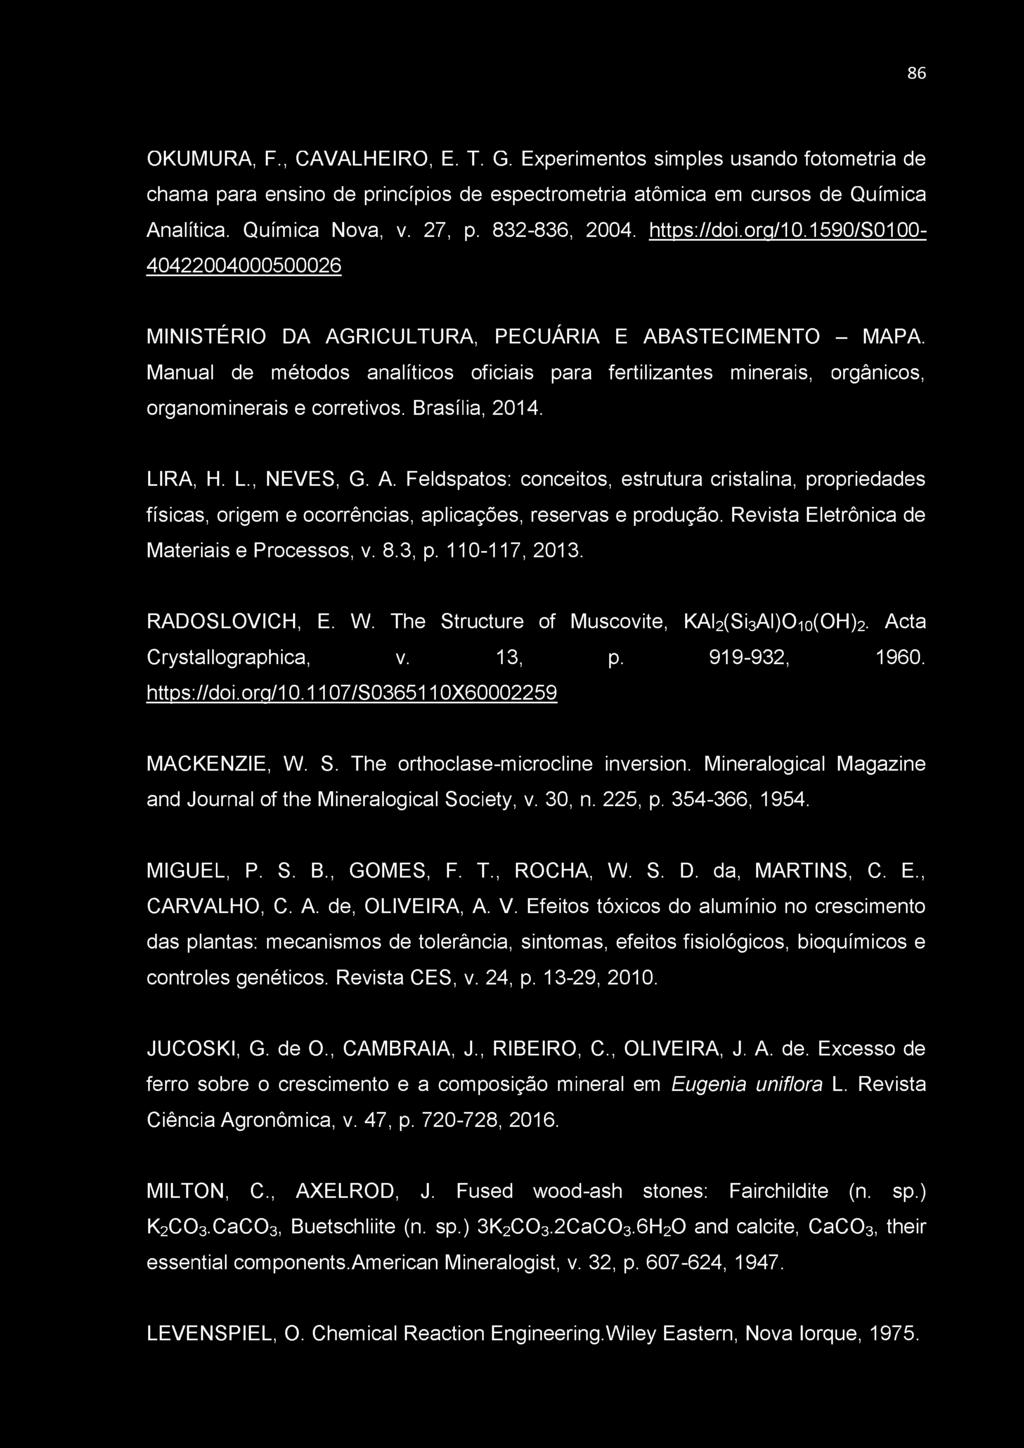 Manual de métodos analíticos oficiais para fertilizantes minerais, orgânicos, organominerais e corretivos. Brasília, 2014. LIRA, H. L., NEVES, G. A.